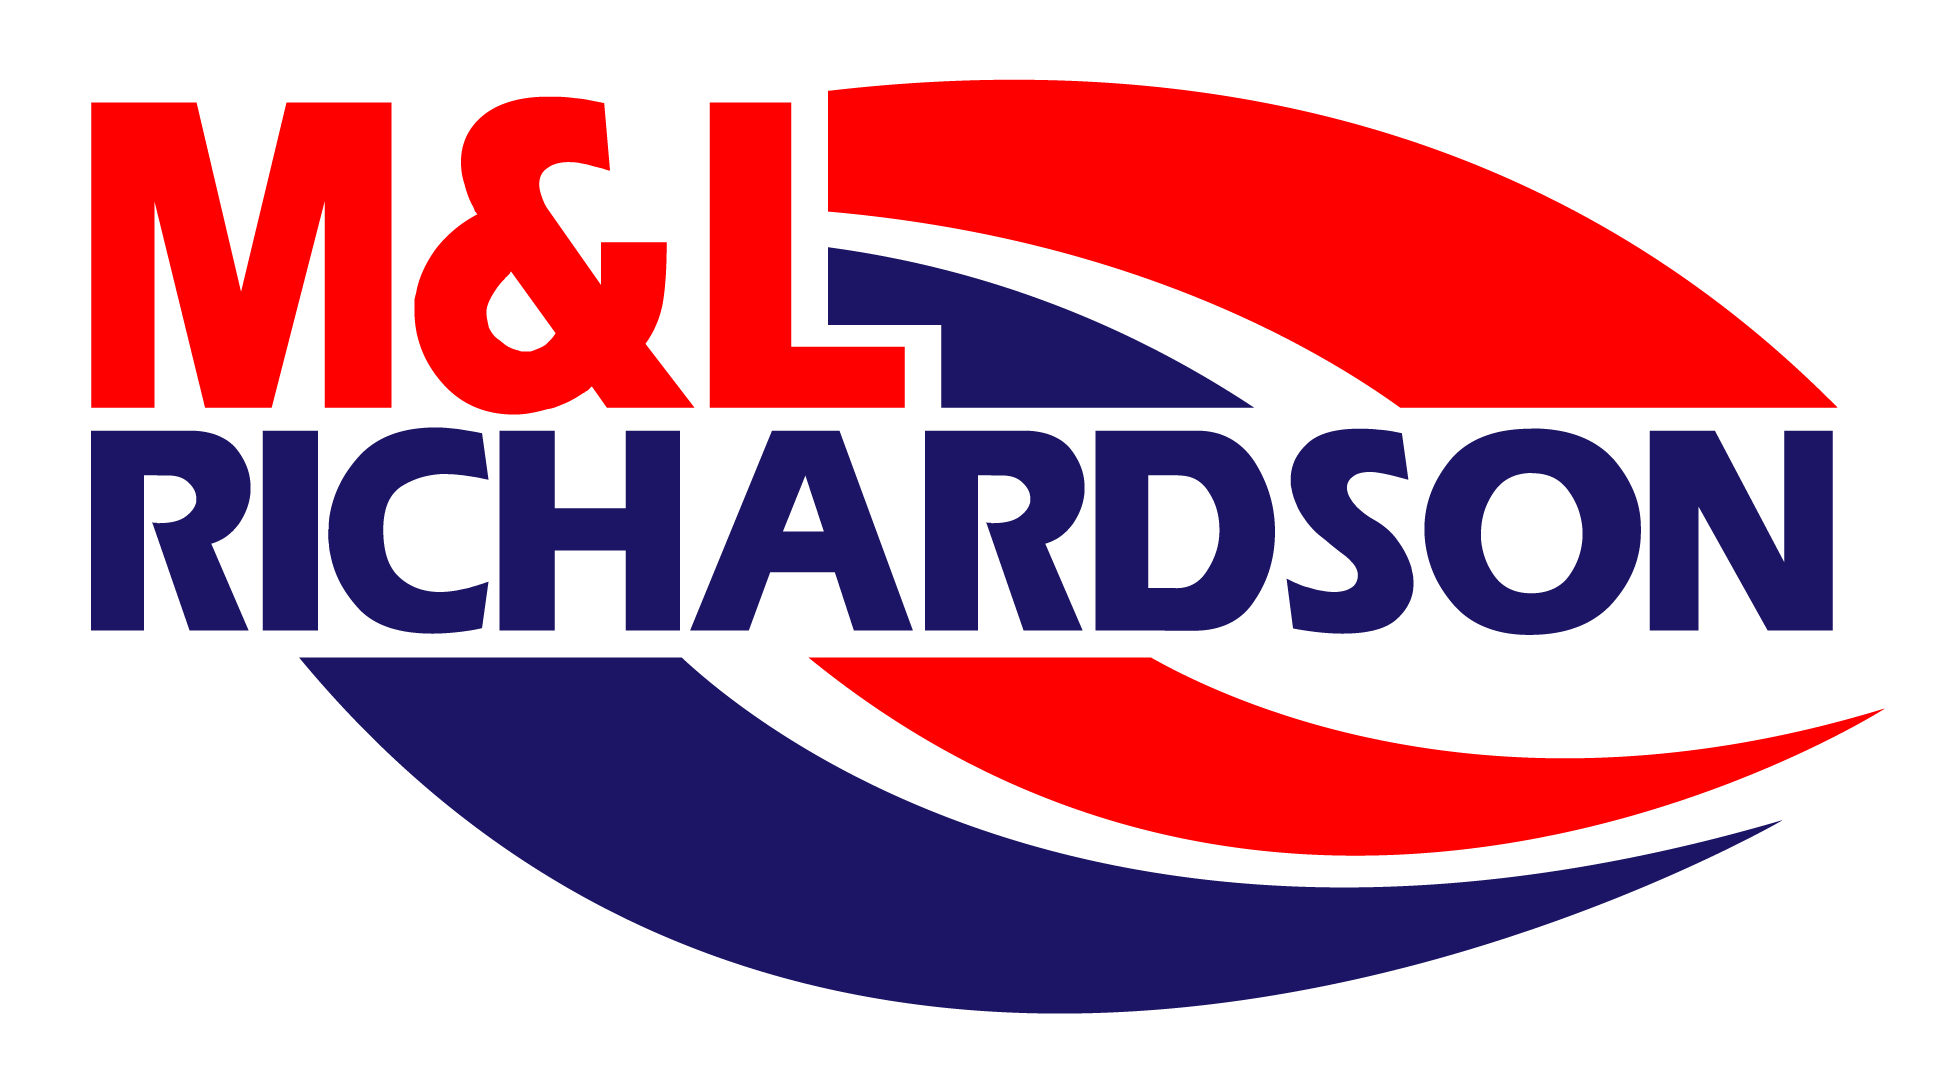 M & L Richardson & Sons Ltd Logo